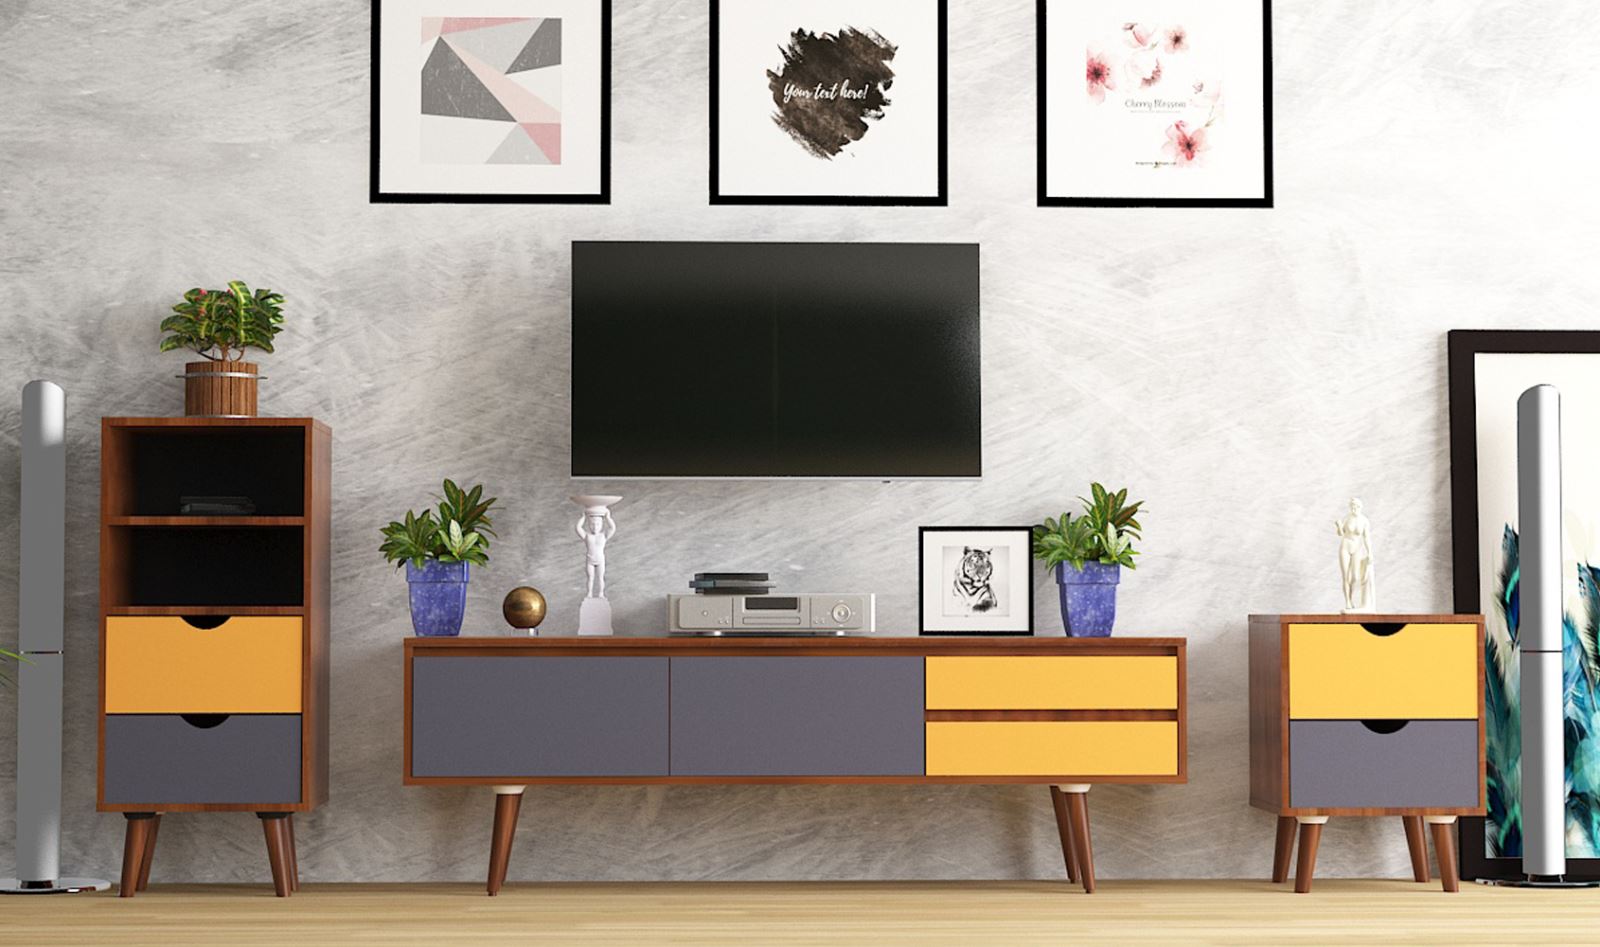 Thiết kế tủ kệ tivi cho phòng riêng của bạn - Triệu Gia